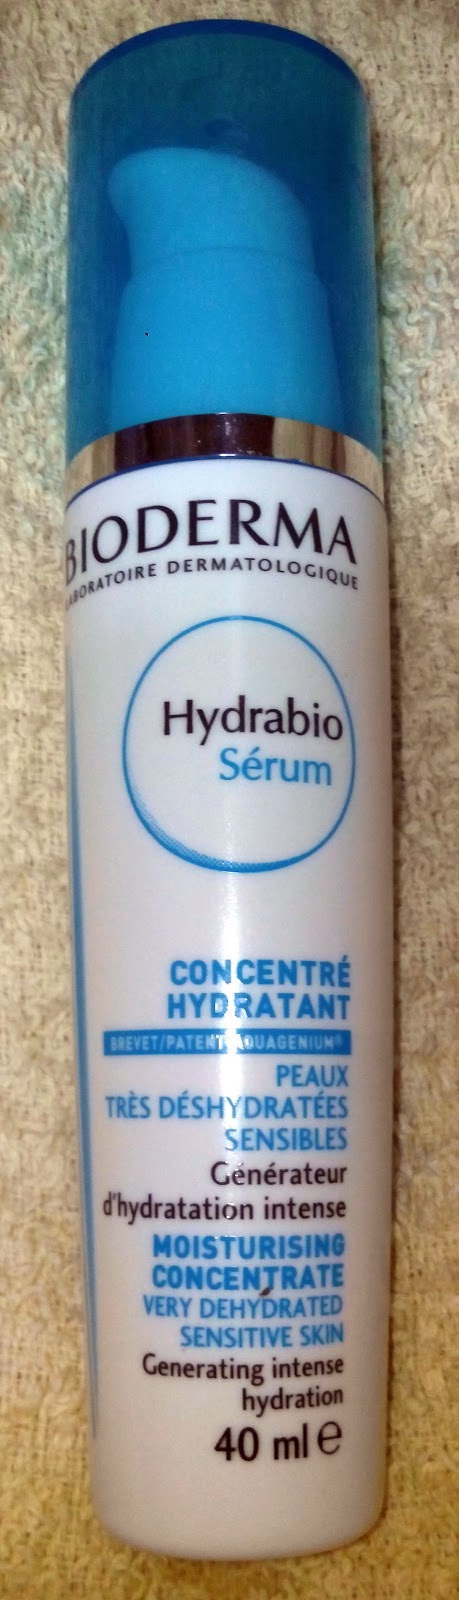 Serum Hydrabio